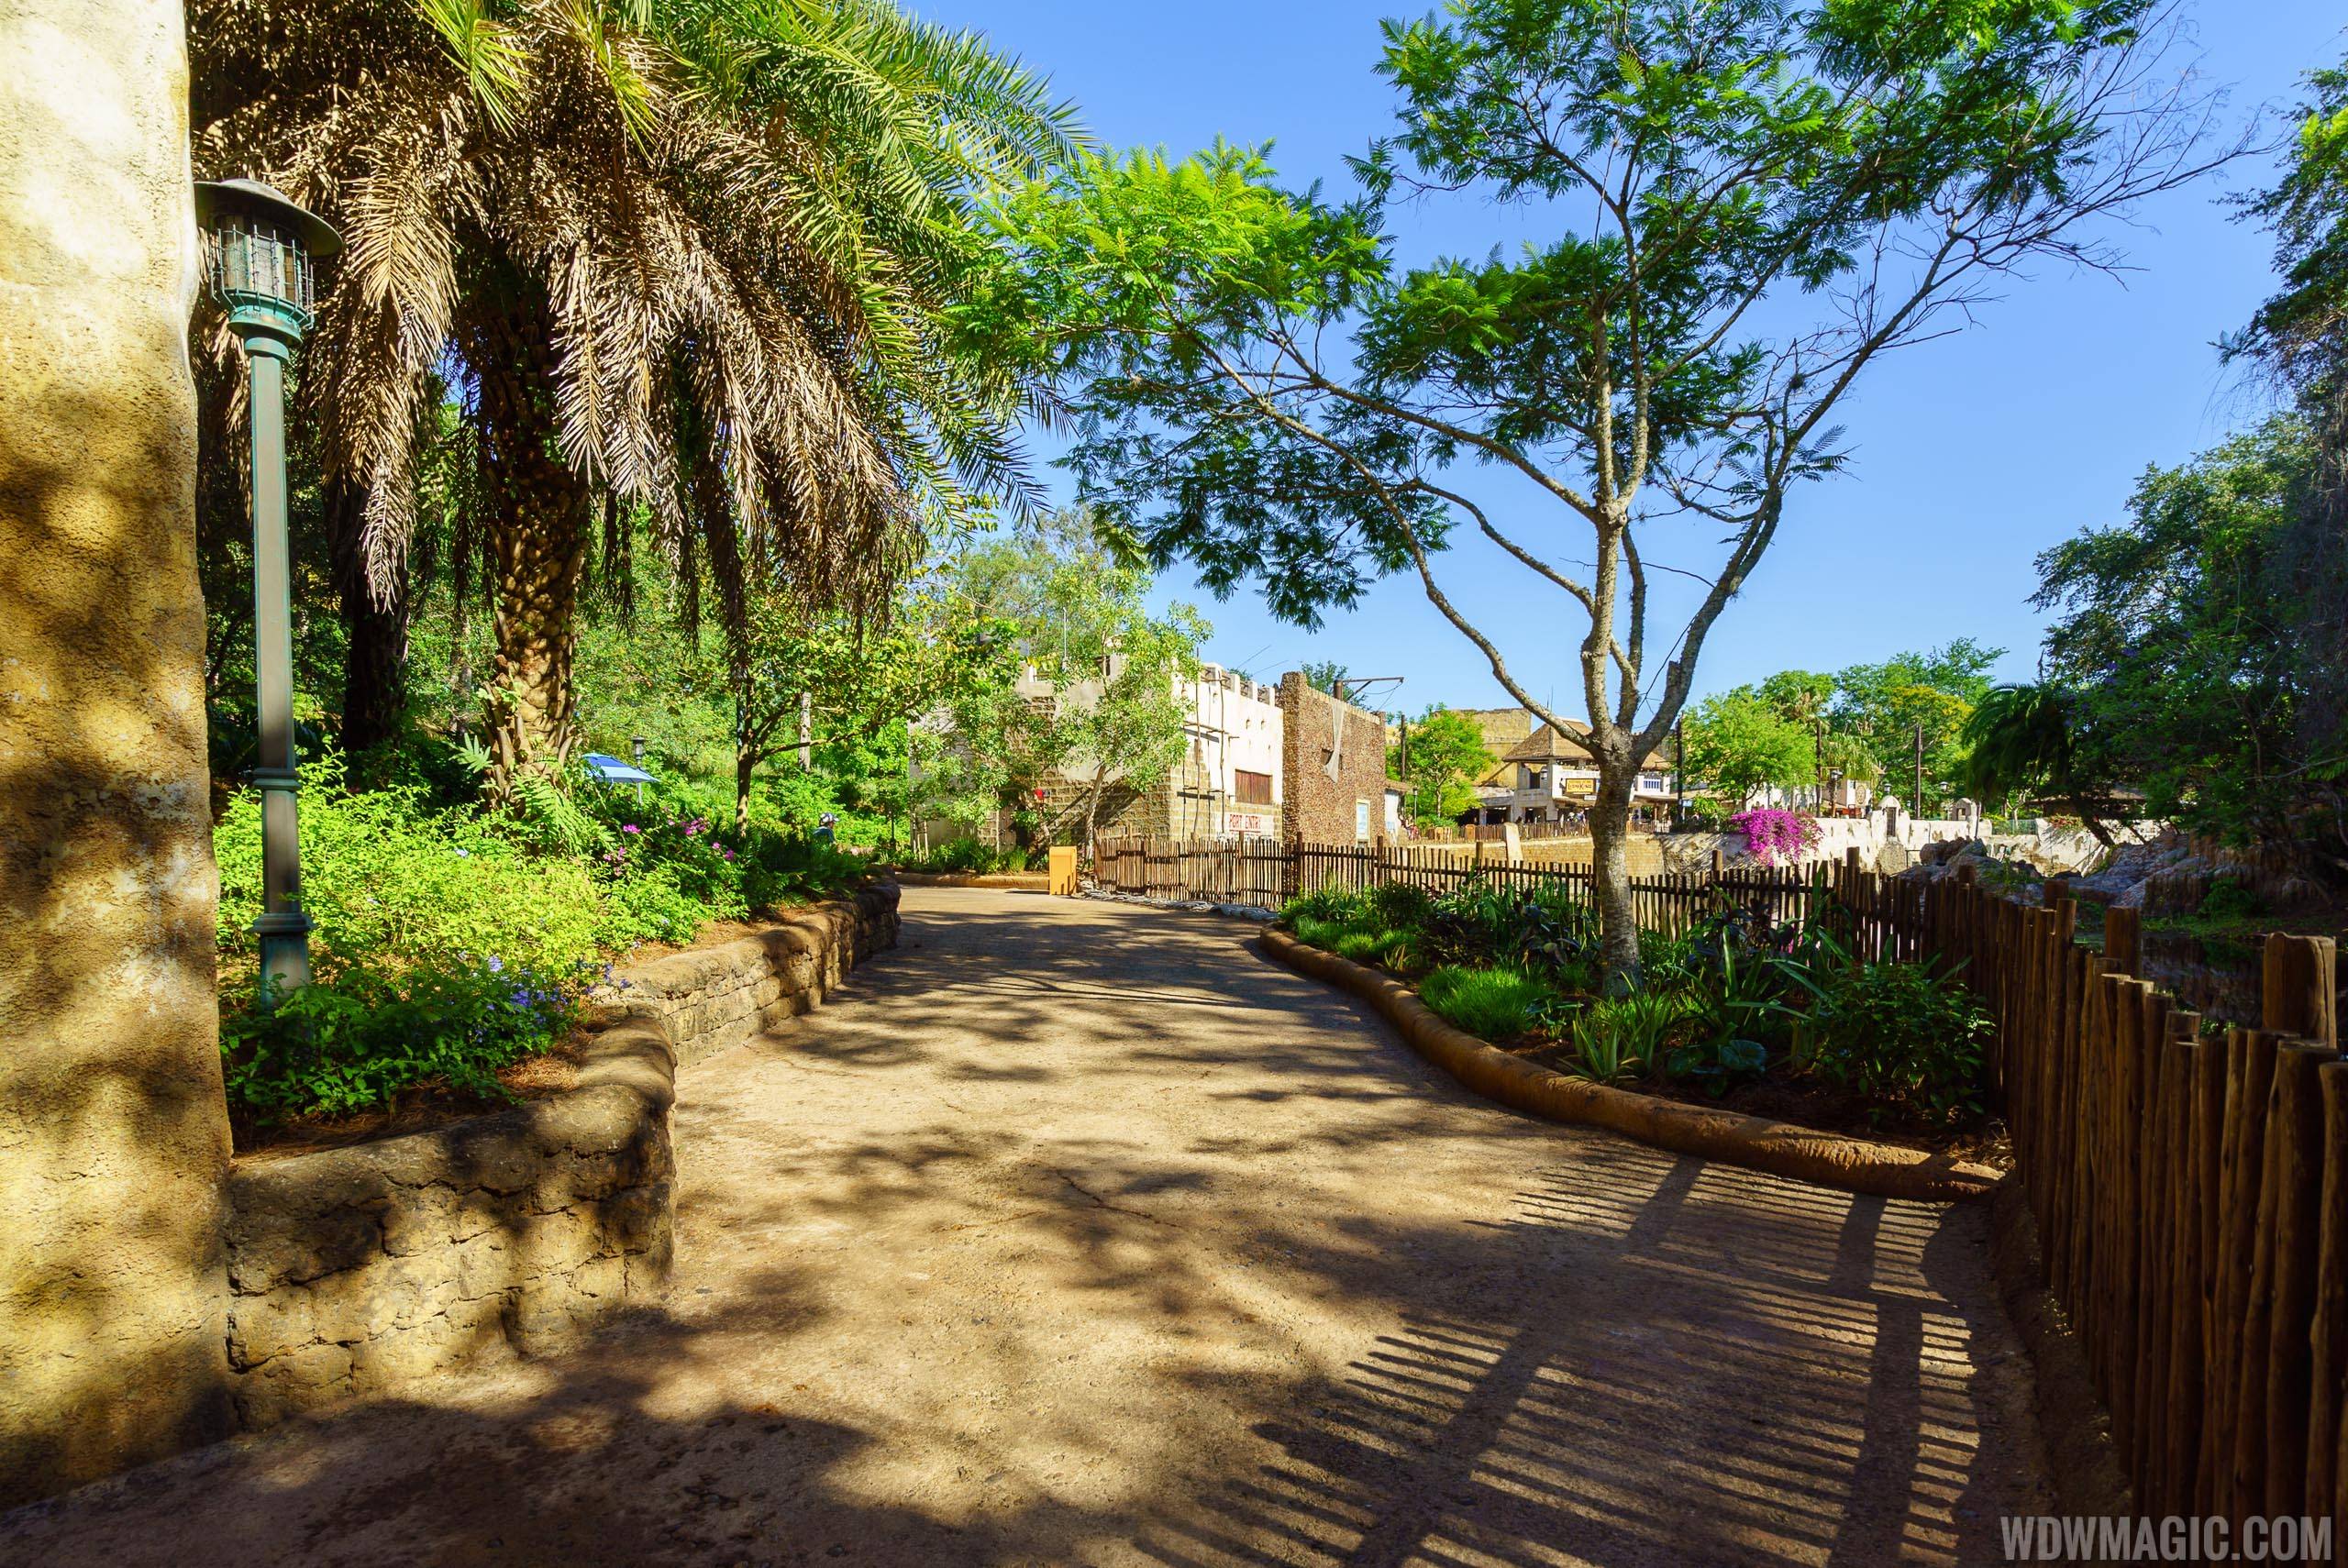 Walkway from Pandora to Harambe